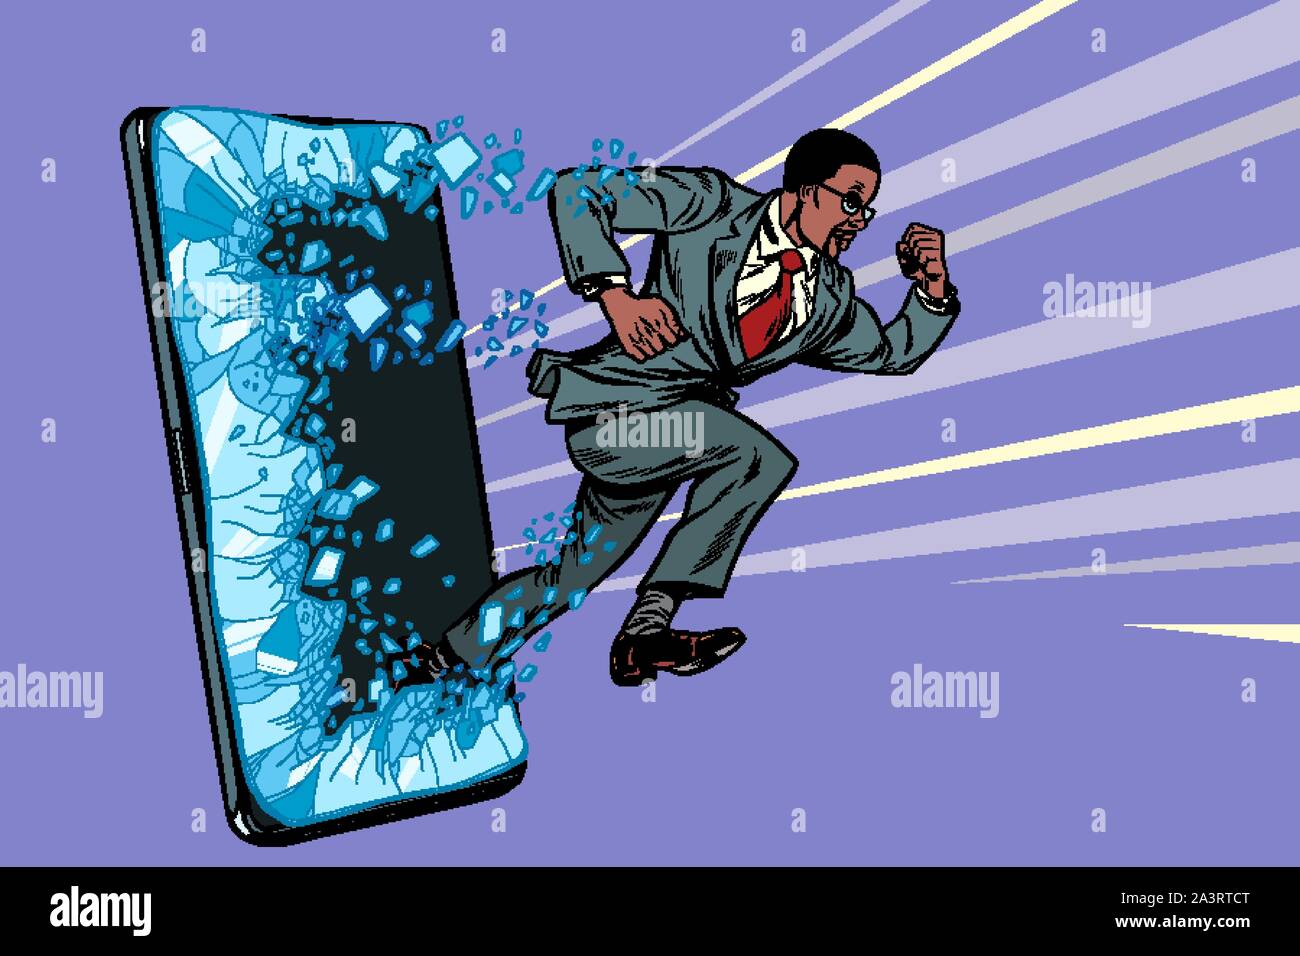 Afrikanischen Geschäftsmann Durchschläge der Bildschirm Telefon gadget Smartphone. Online Internet Application Service Programm. Pop Art retro Vektor illustration Zeichnung Stock Vektor